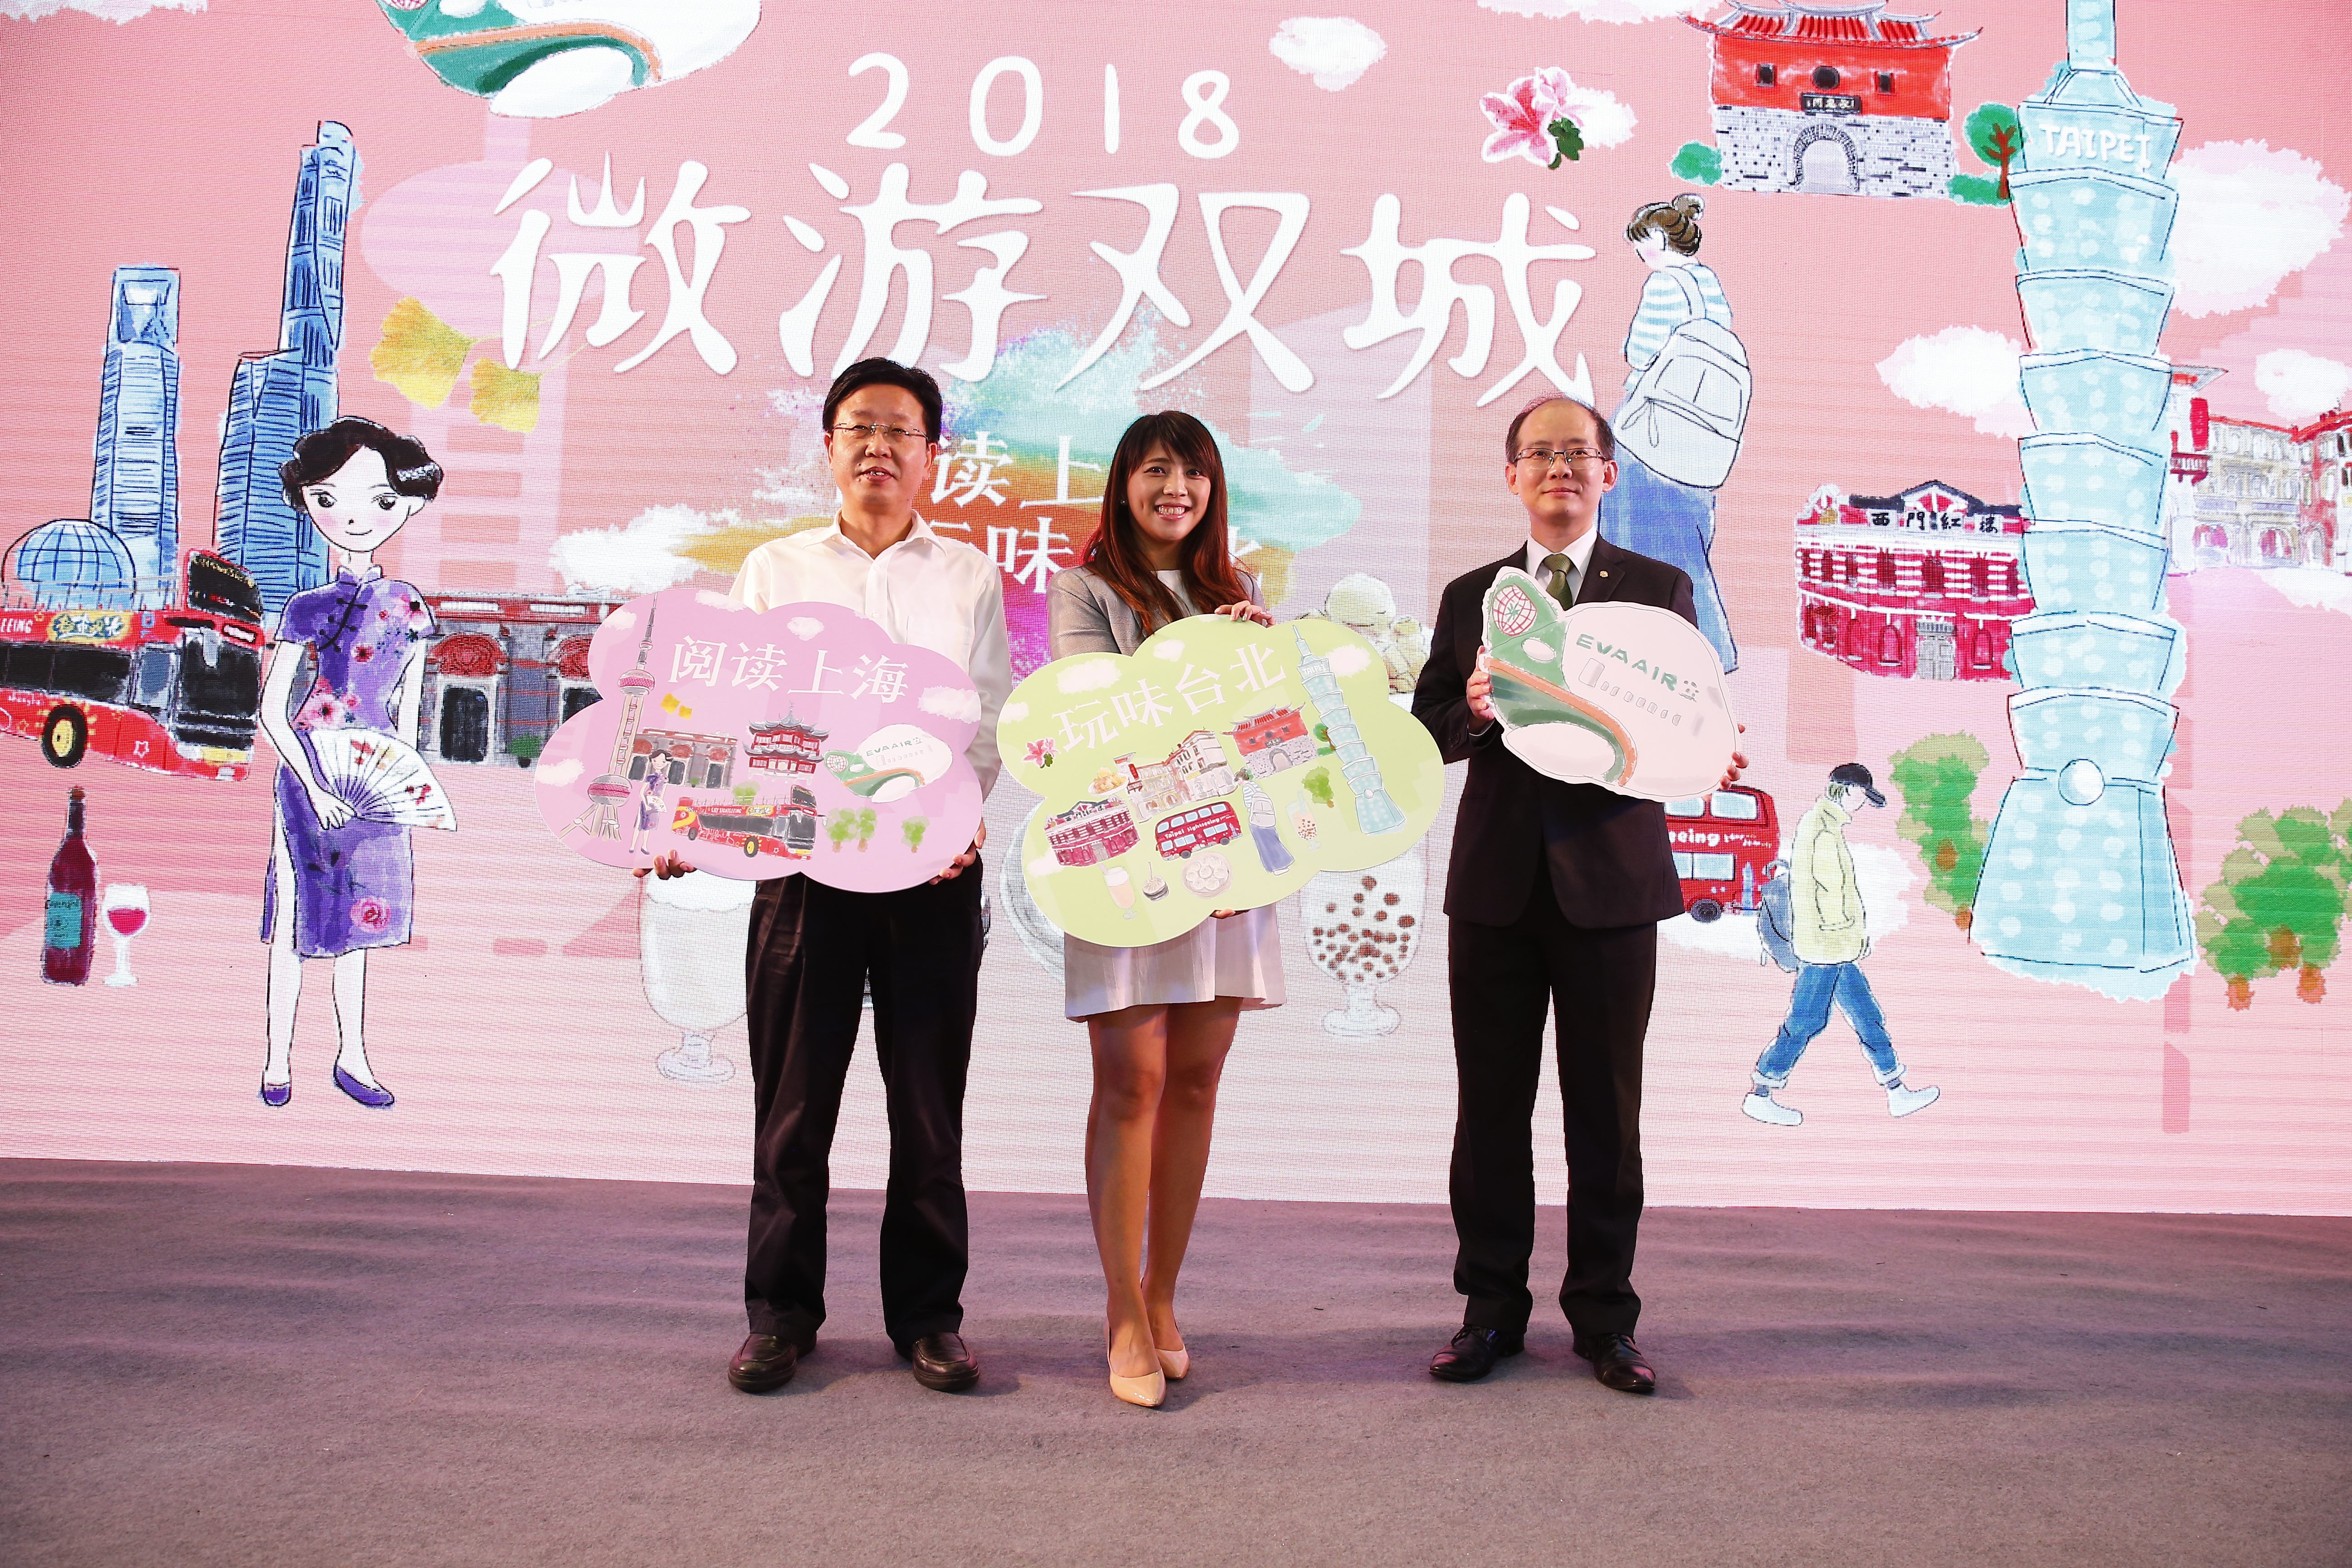 2018微遊雙城活動由上海旅遊局、台北市觀光傳播局及長榮航空共同推薦